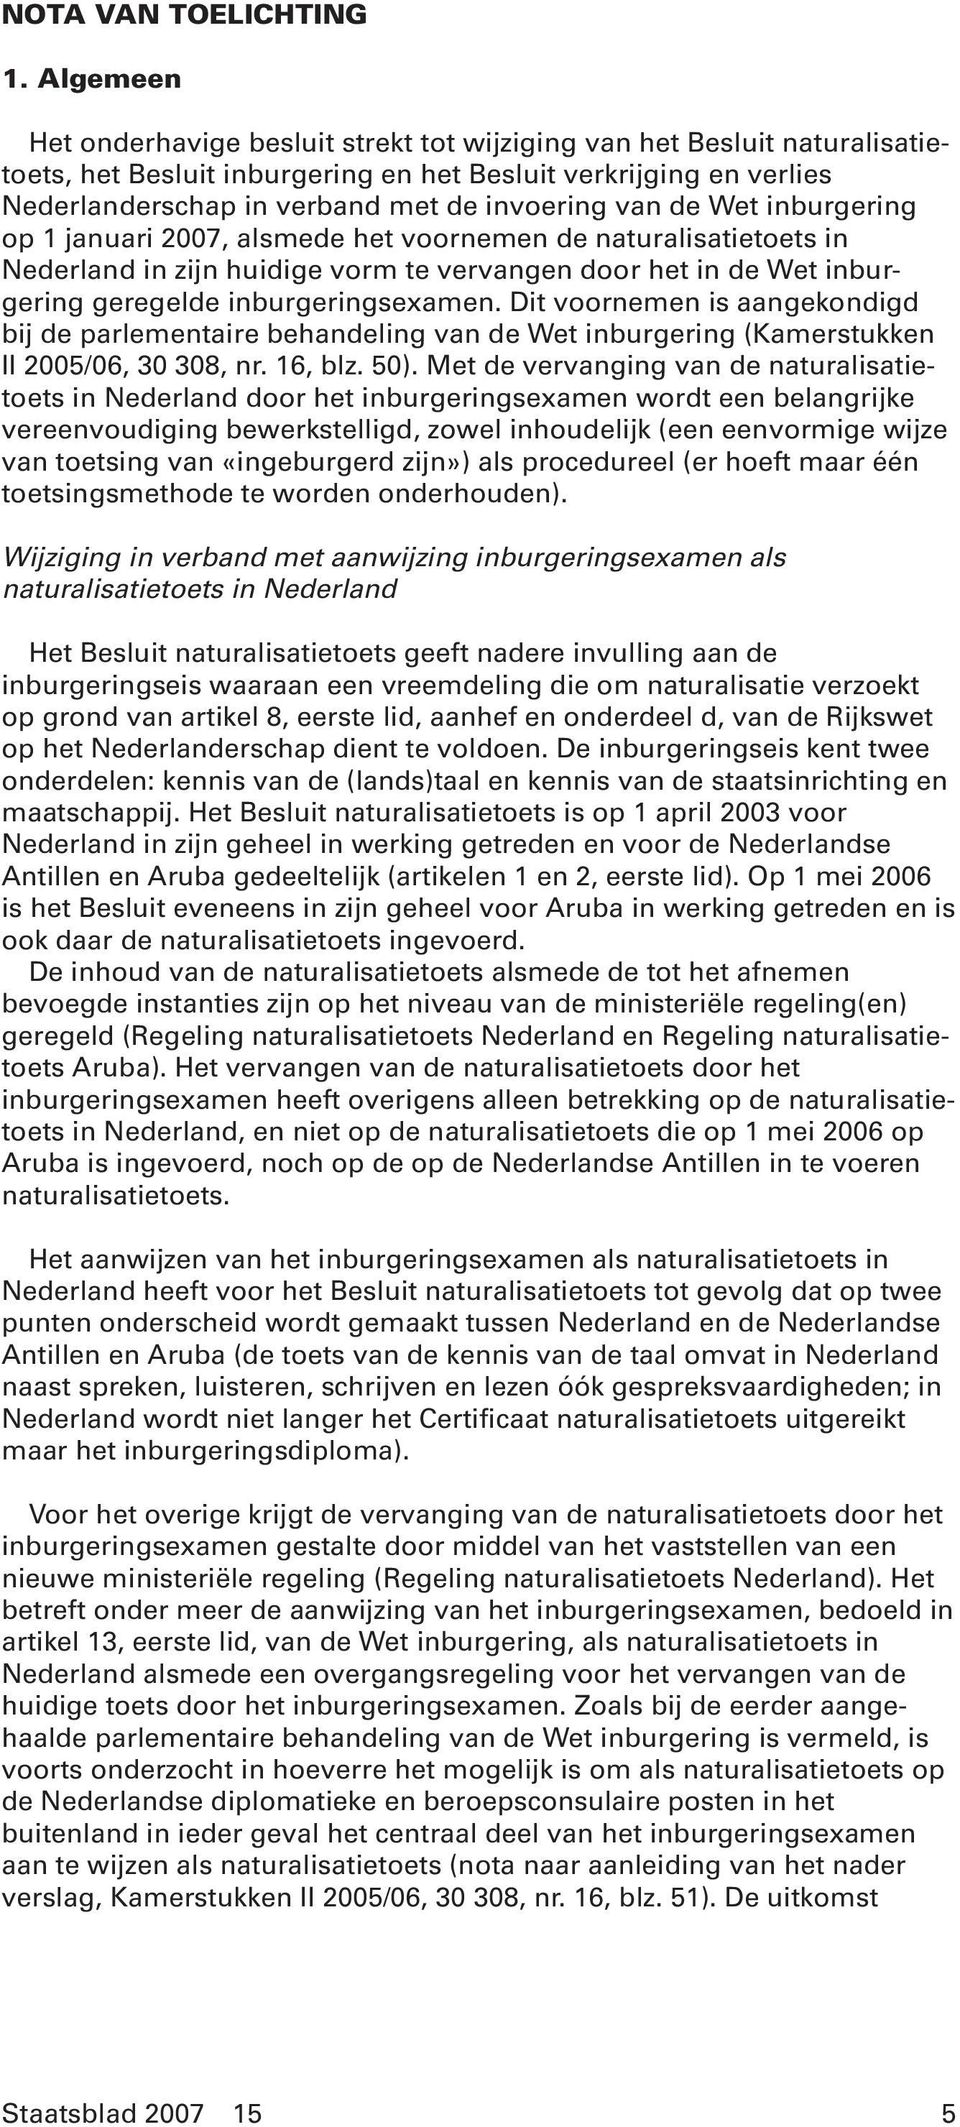 van de Wet inburgering op 1 januari 2007, alsmede het voornemen de naturalisatietoets in Nederland in zijn huidige vorm te vervangen door het in de Wet inburgering geregelde inburgeringsexamen.